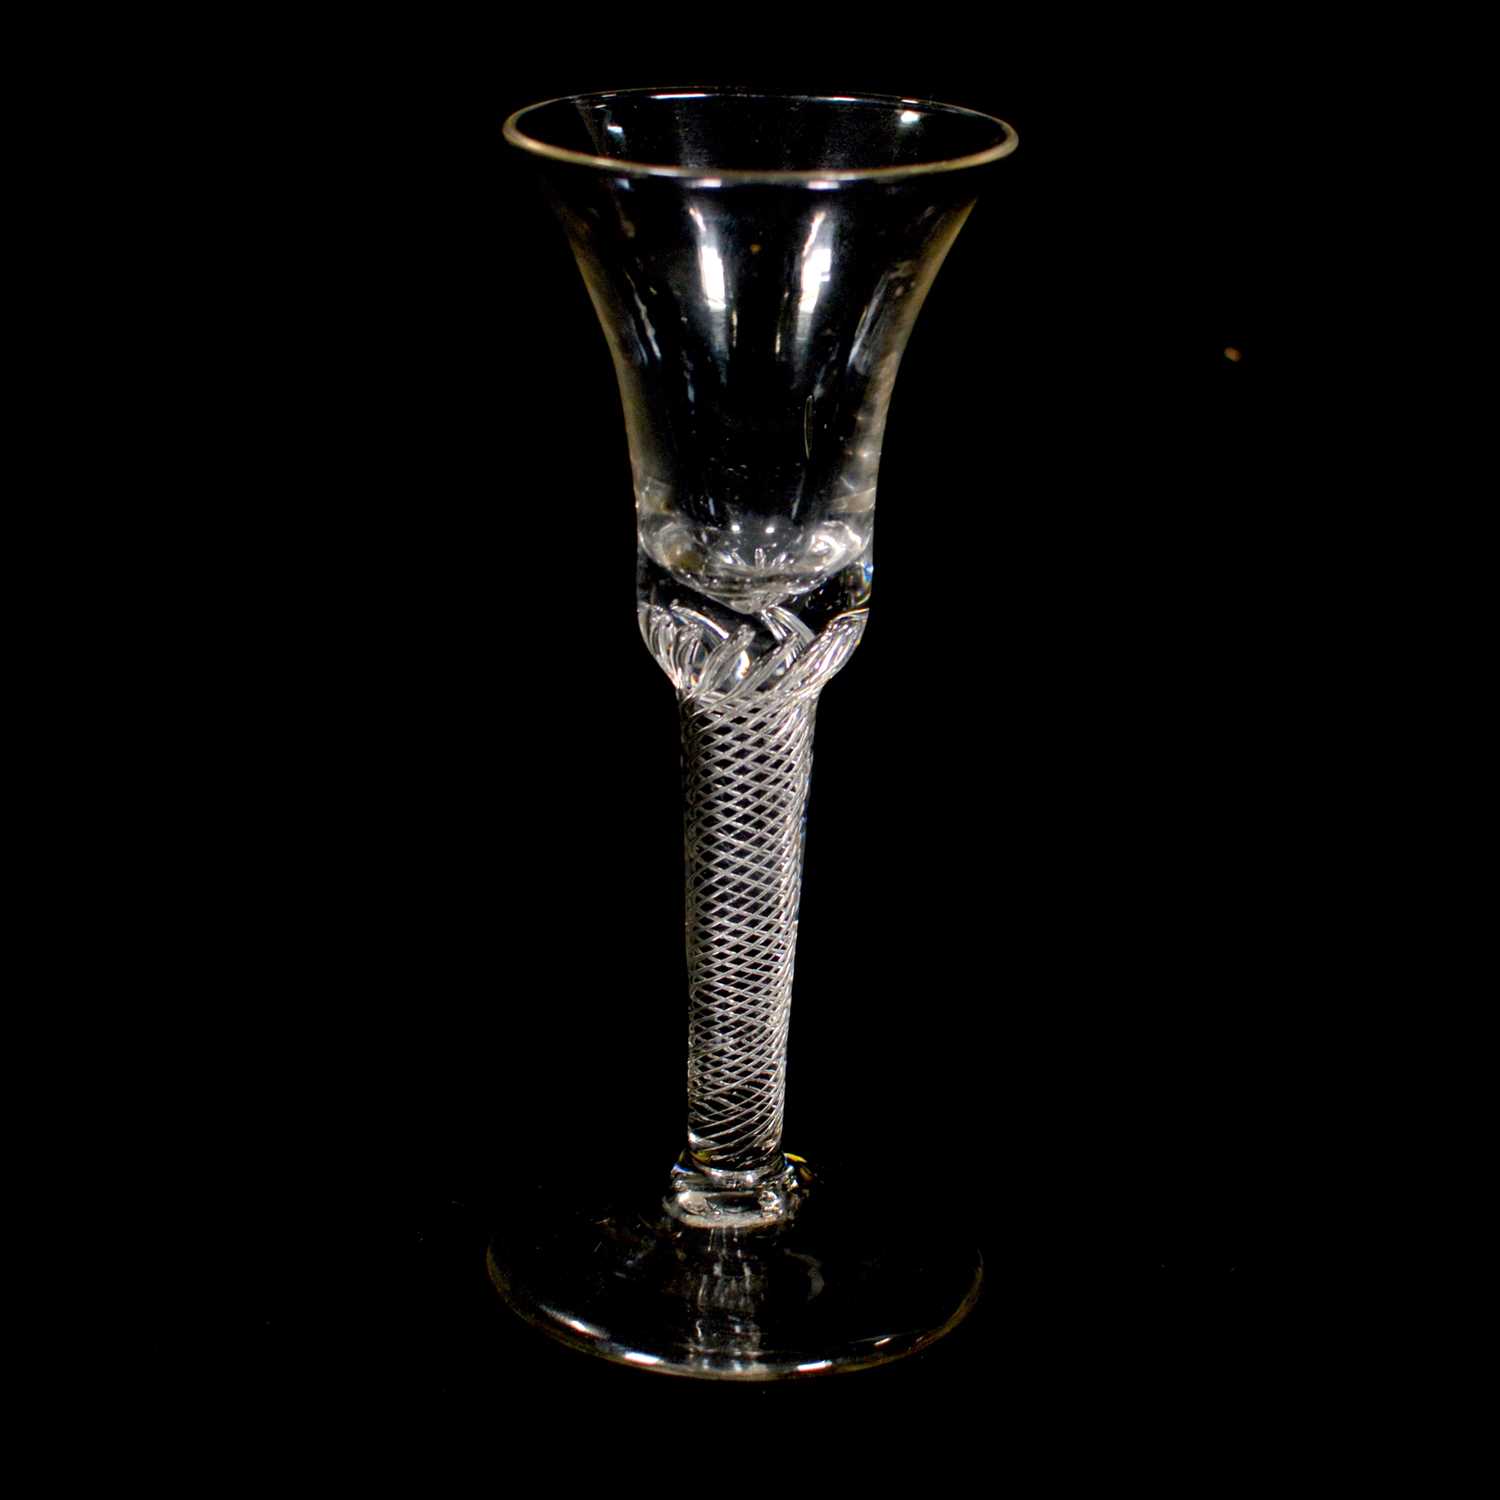 Lot 3 - Wine glass, with multi-thread air-twist stem